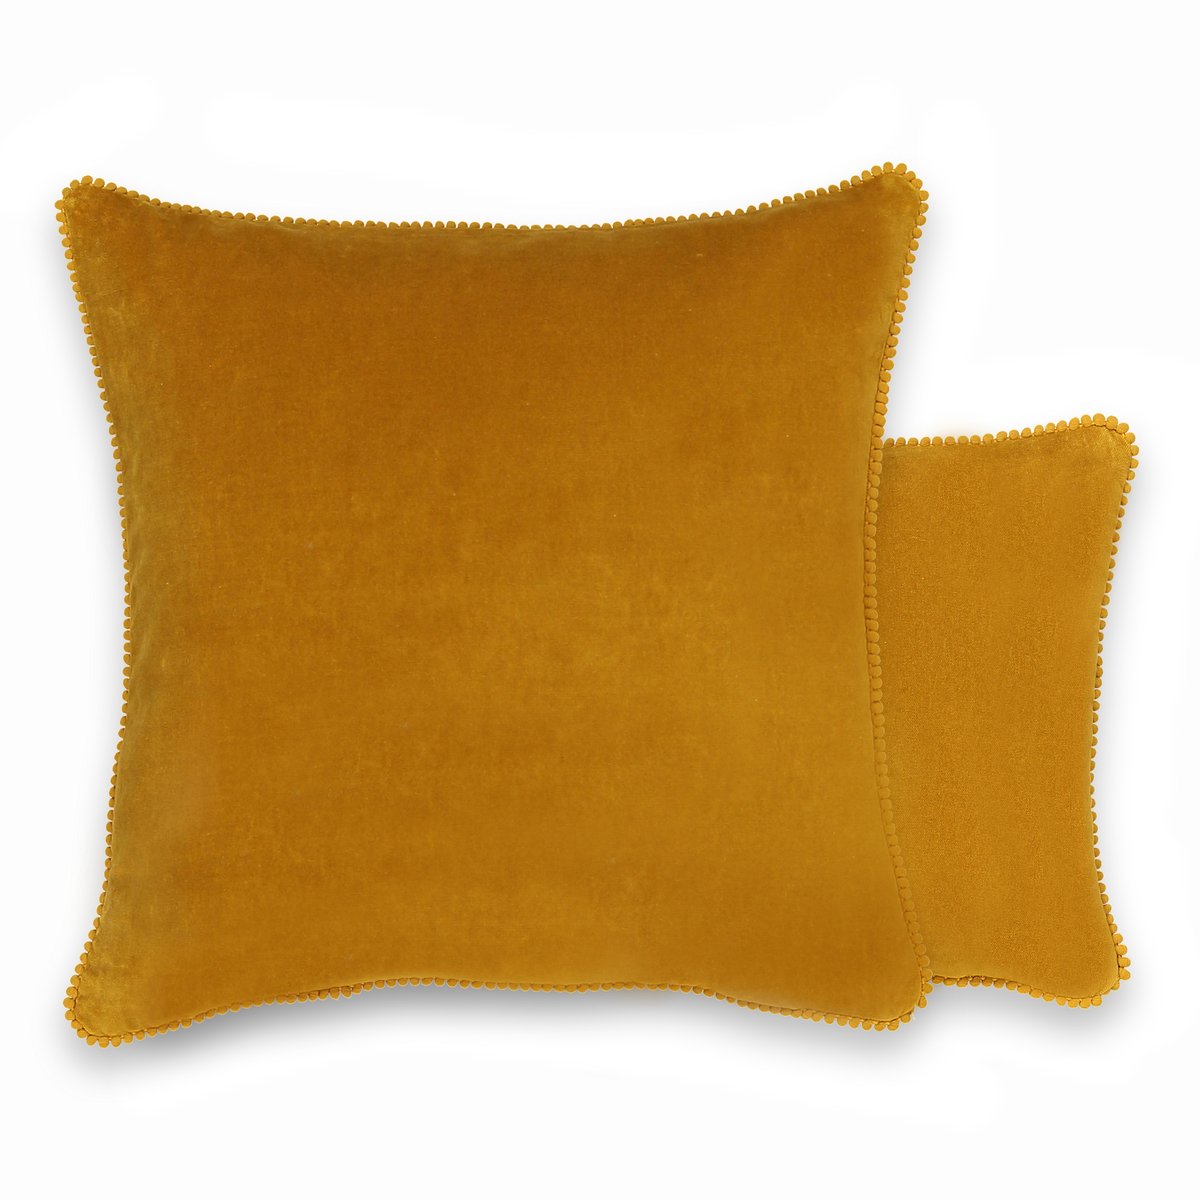 Чехол La Redoute На подушку из велюра VELVET 45 x 45 см желтый, размер 45 x 45 см - фото 1